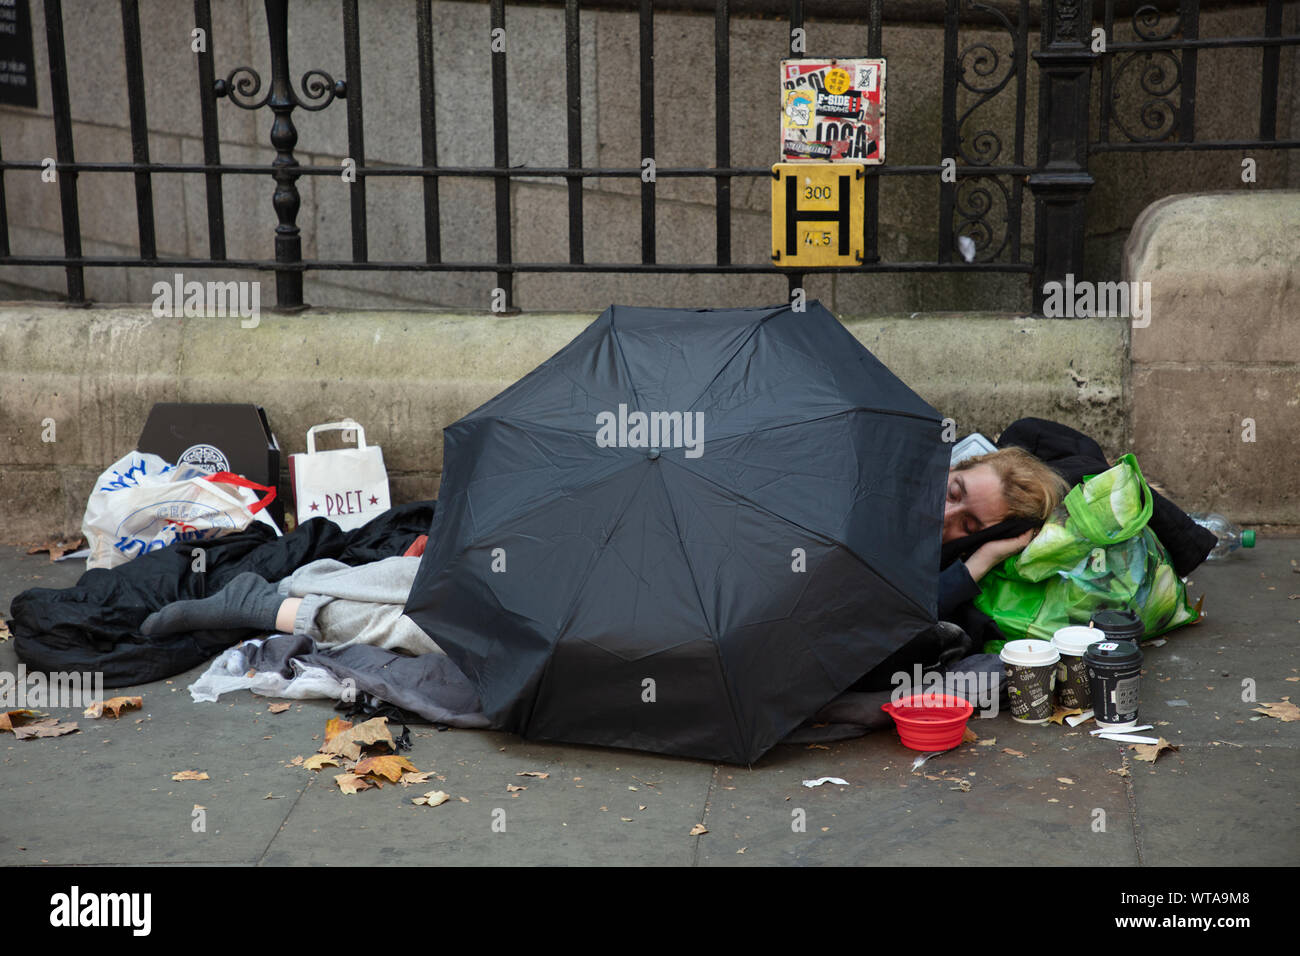 Obdachlosen schläft auf einer Straße im Zentrum von London in der Nähe von Trafalgar Square geschützt etwas durch einen Regenschirm gegen den Regen. Stockfoto